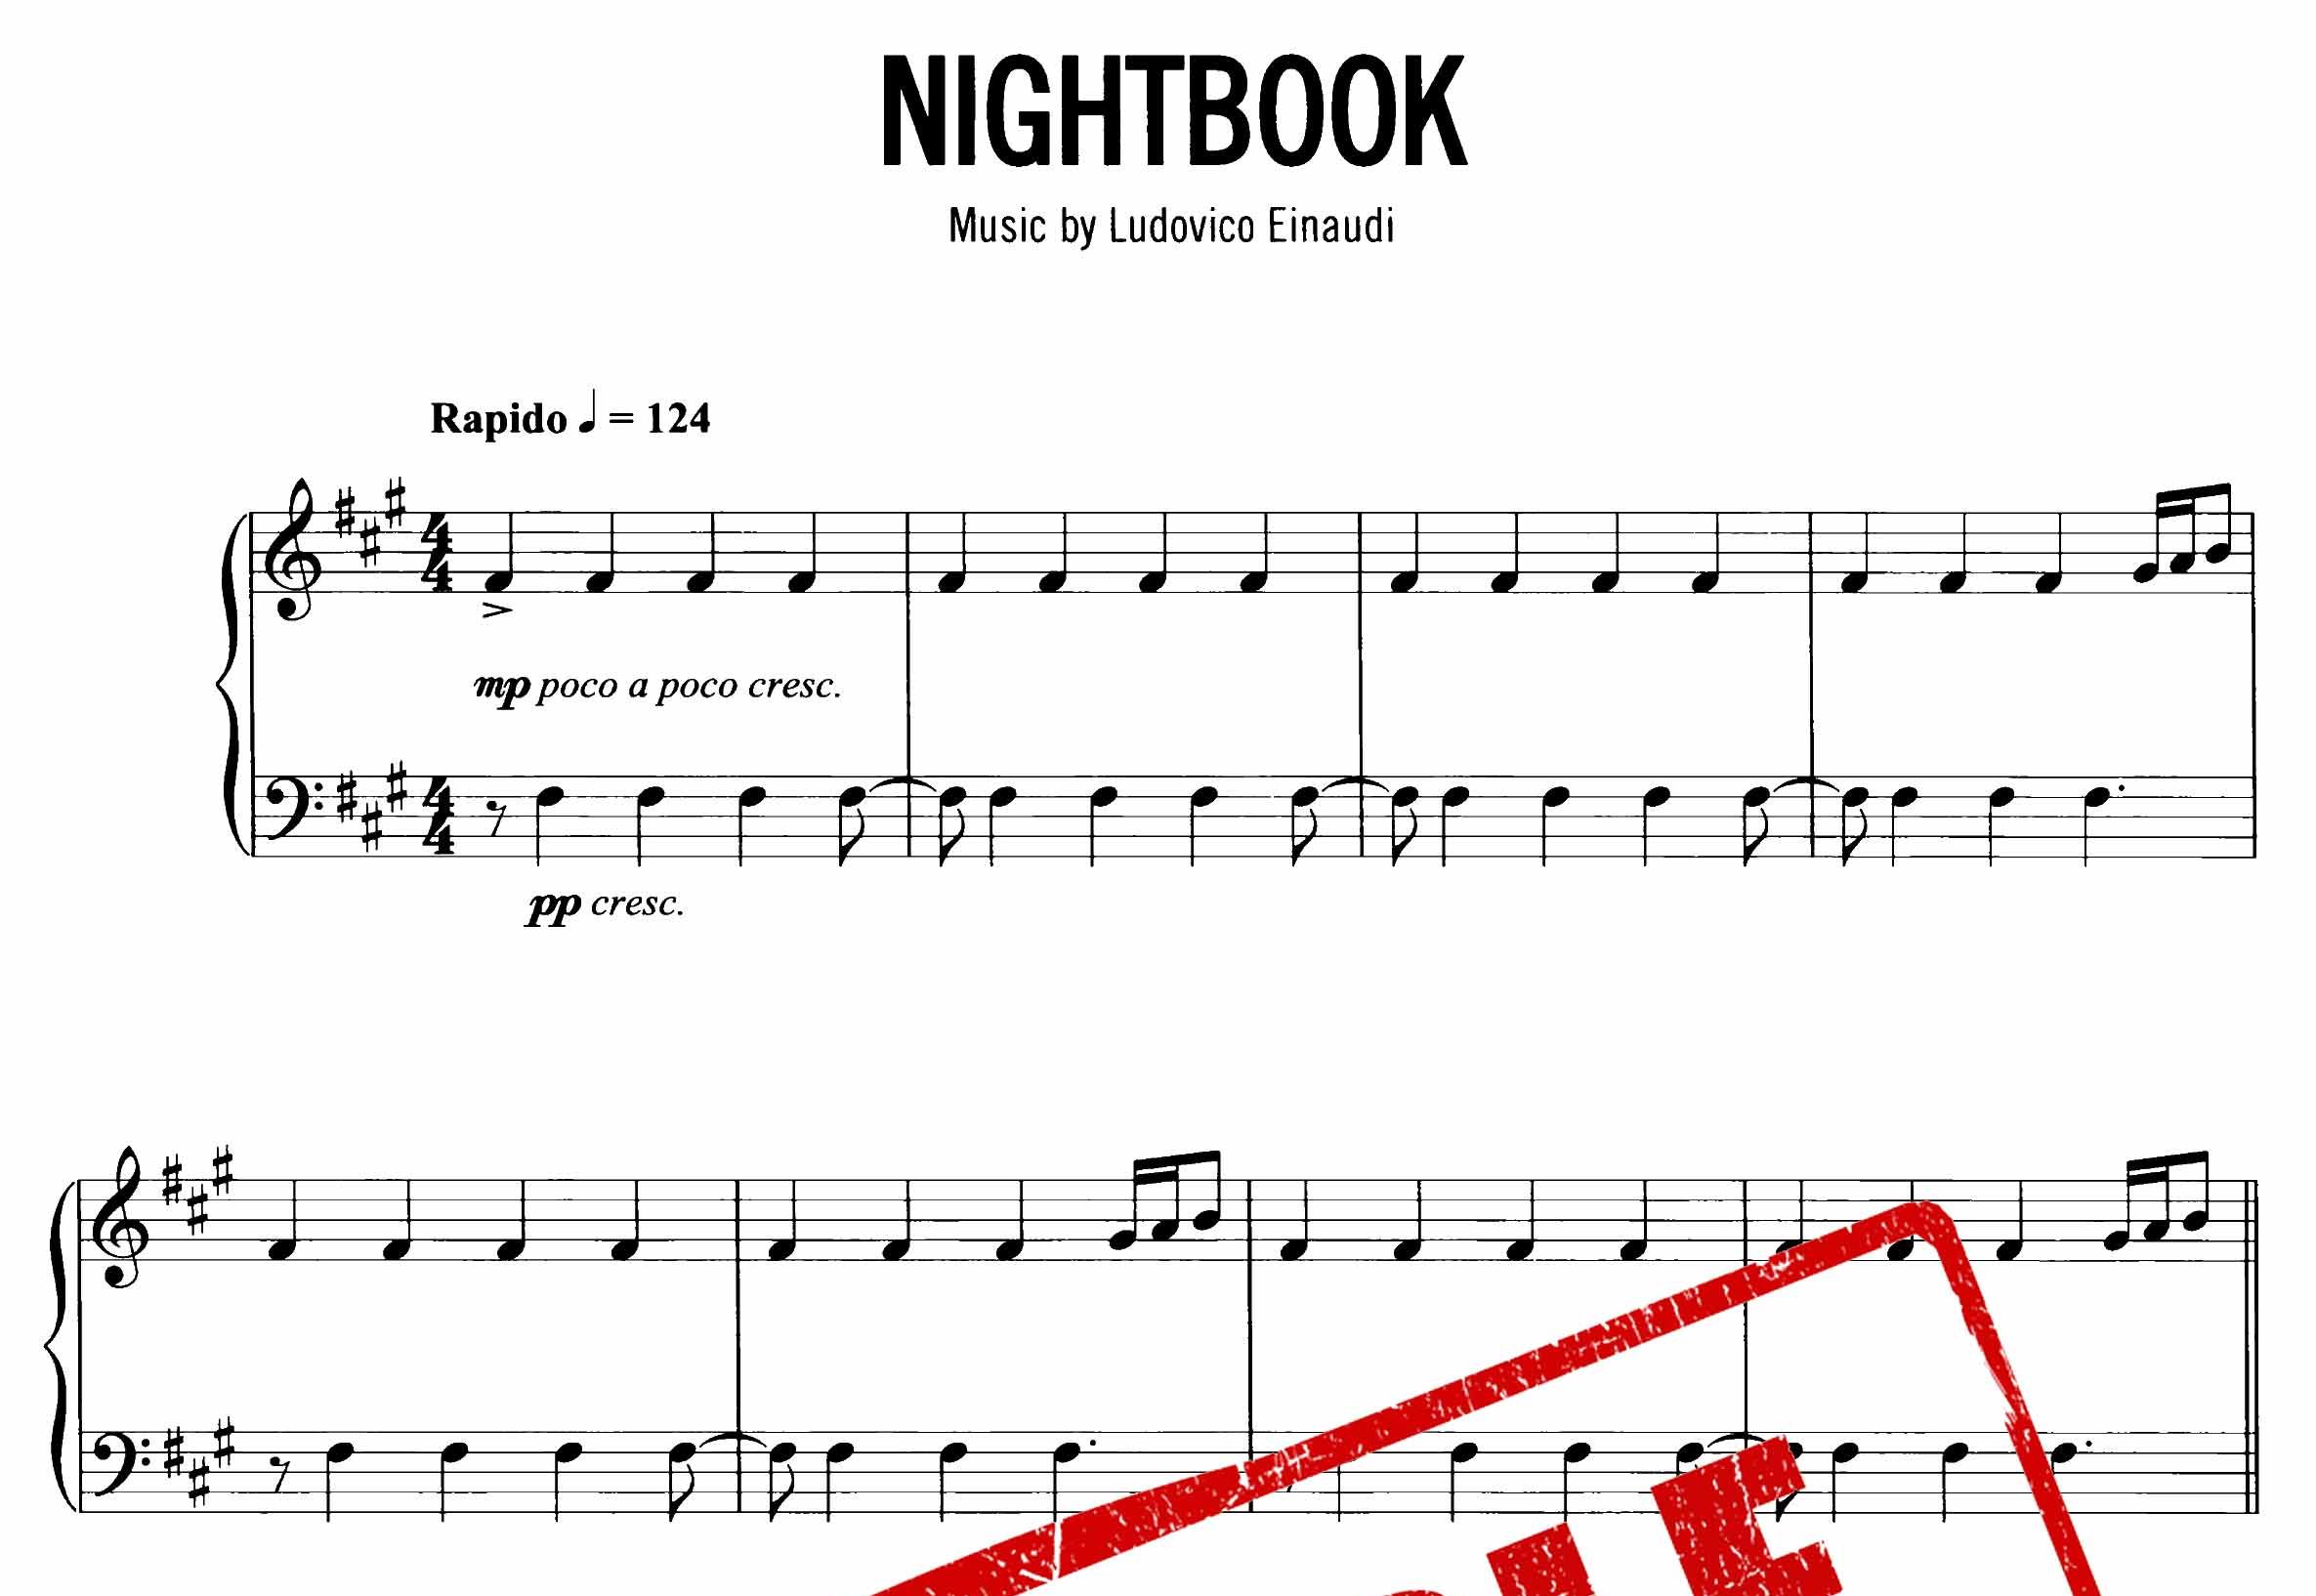 نت پیانوی Nightbook از لودویکو اناودی